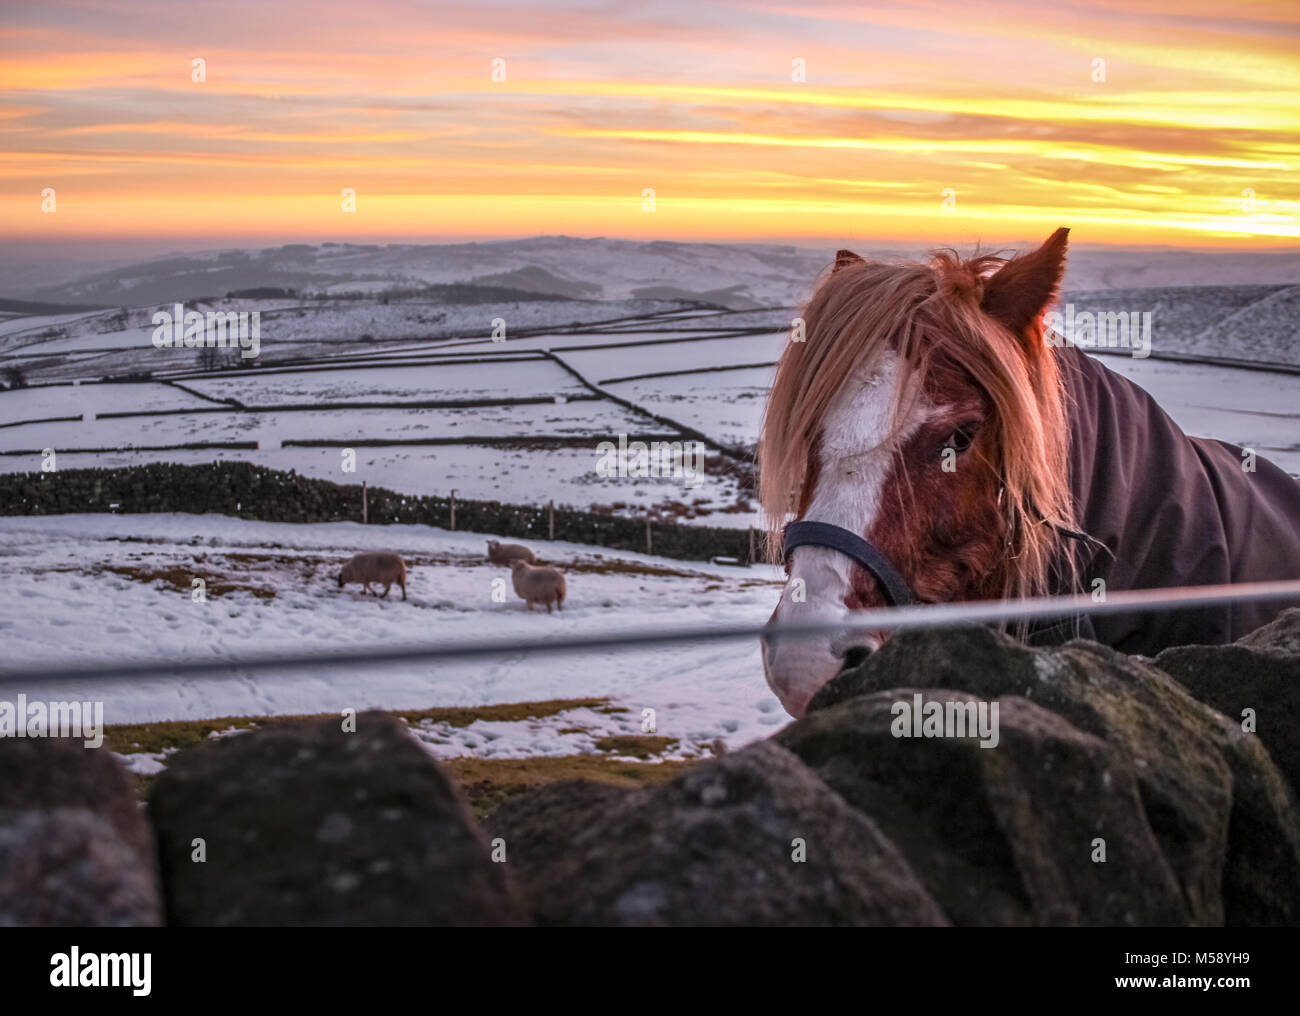 Portrait de cheval dans une ferme de neige dans le Peak District UK, les moutons et les collines composent l'image. Banque D'Images